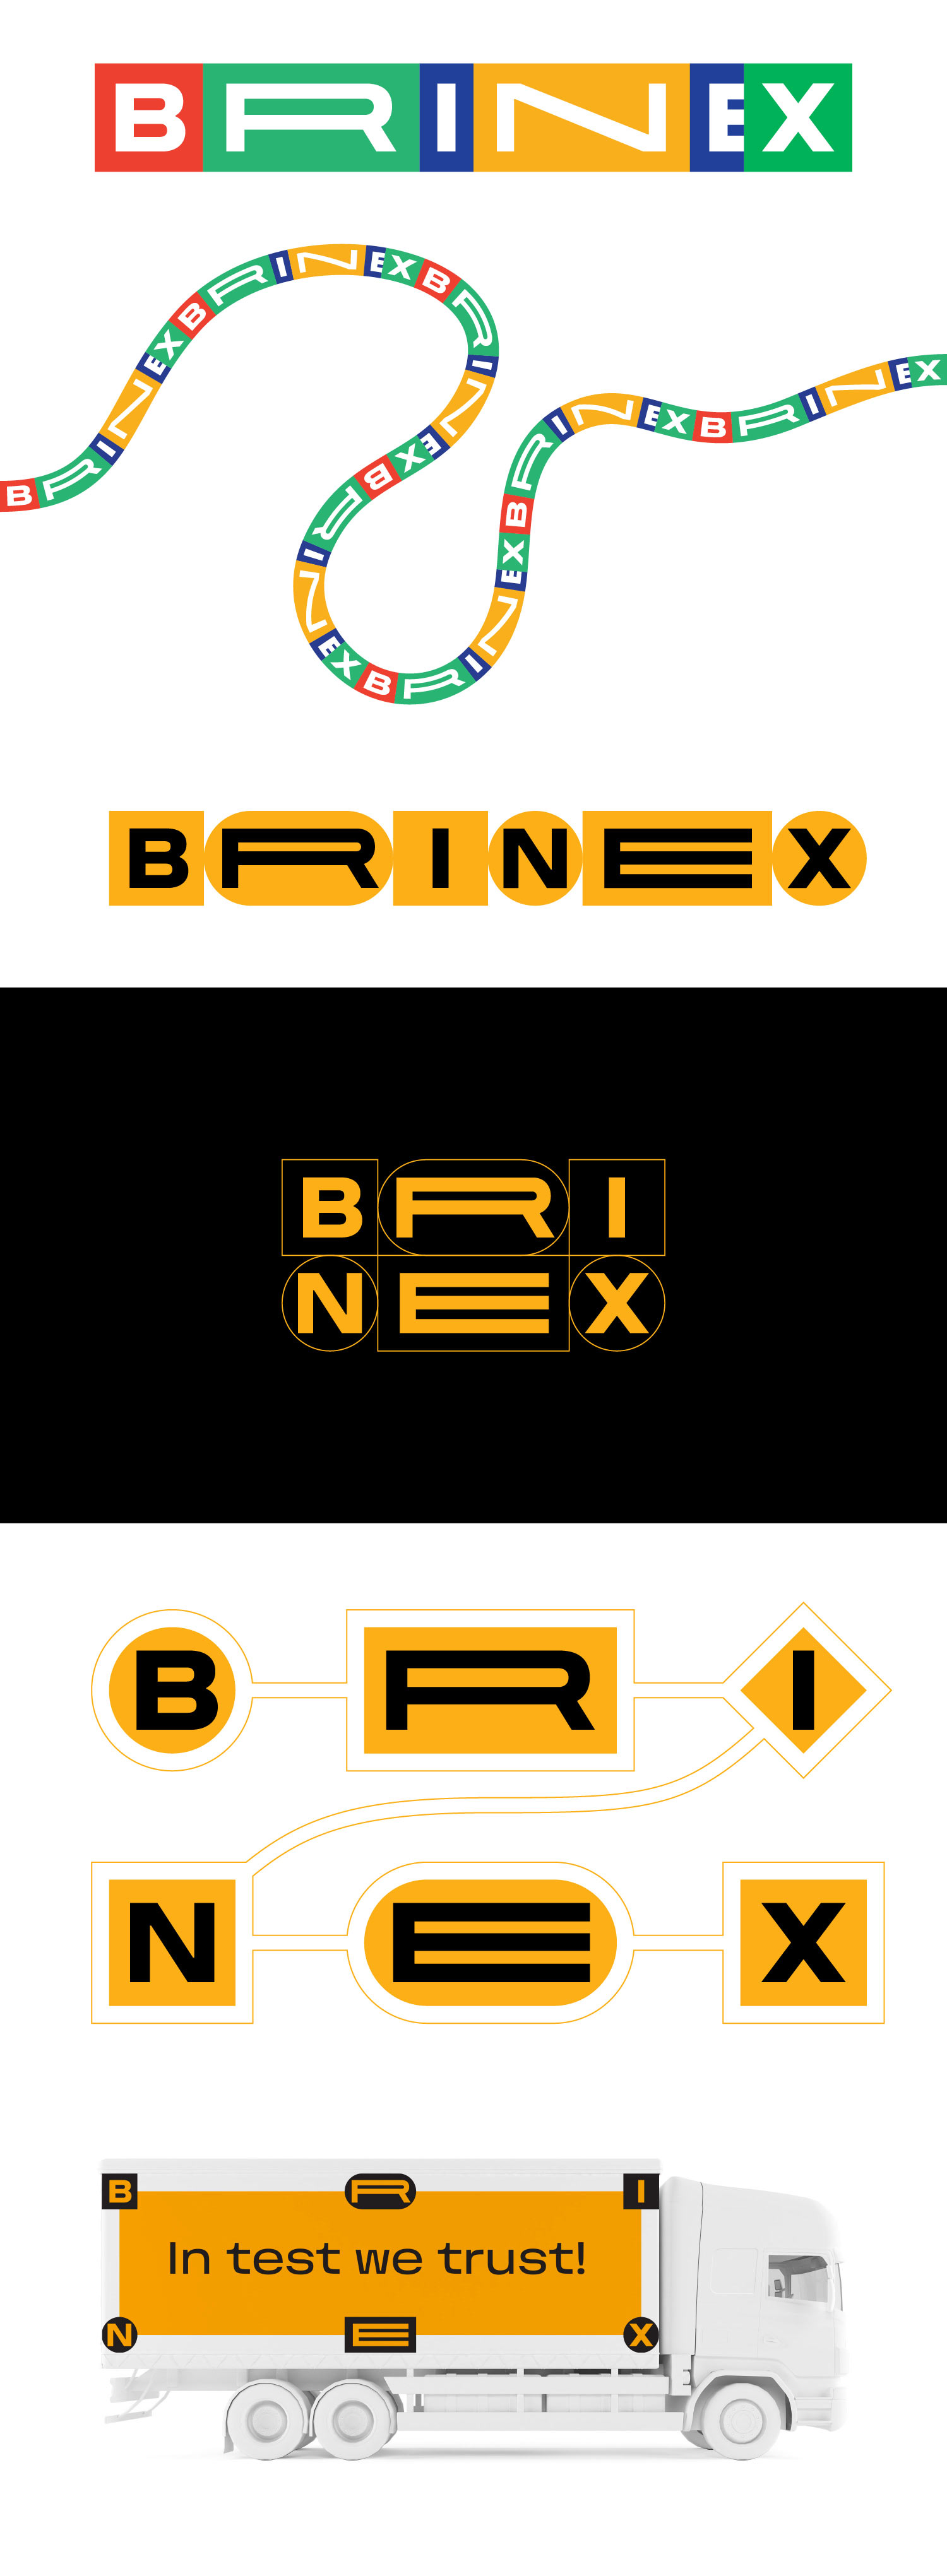 brinex process 01